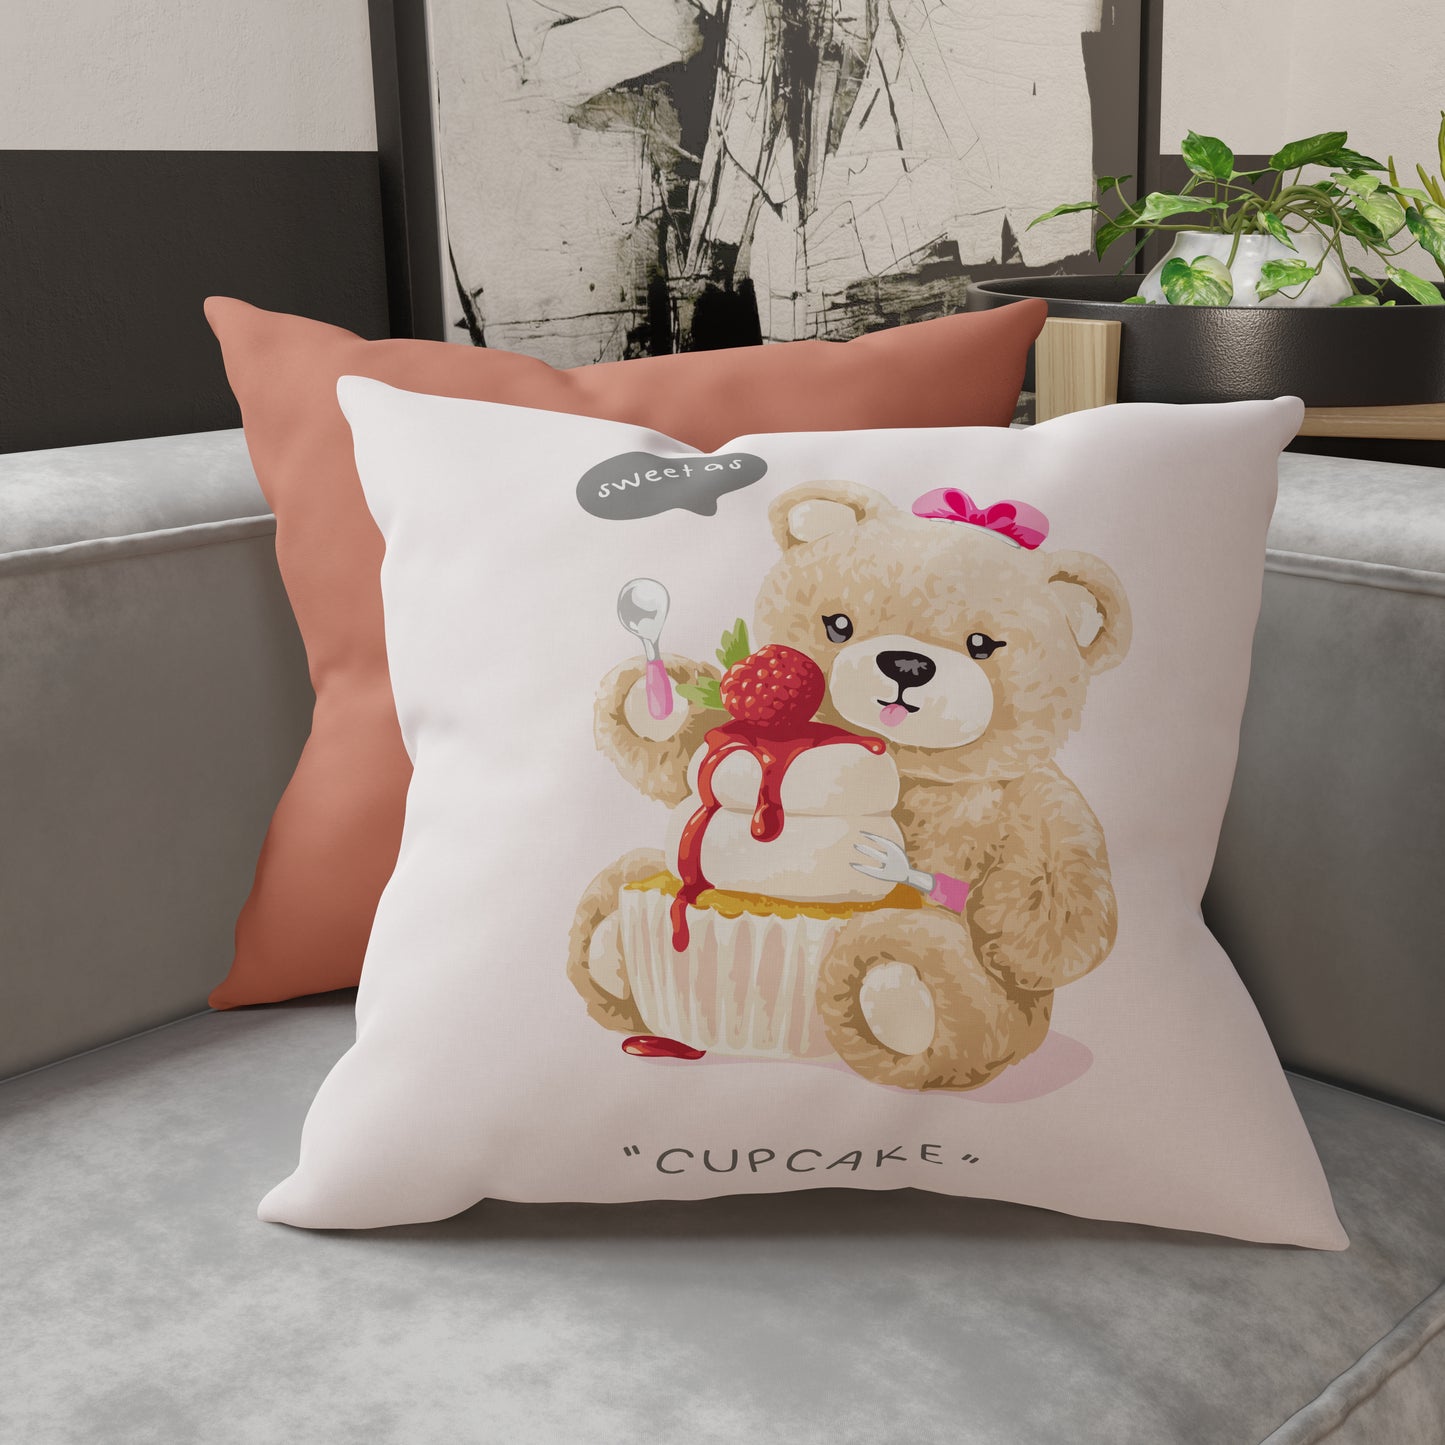 Coussins, housses de coussin de canapé, coussins d'ameublement en impression numérique Teddy Cupcake